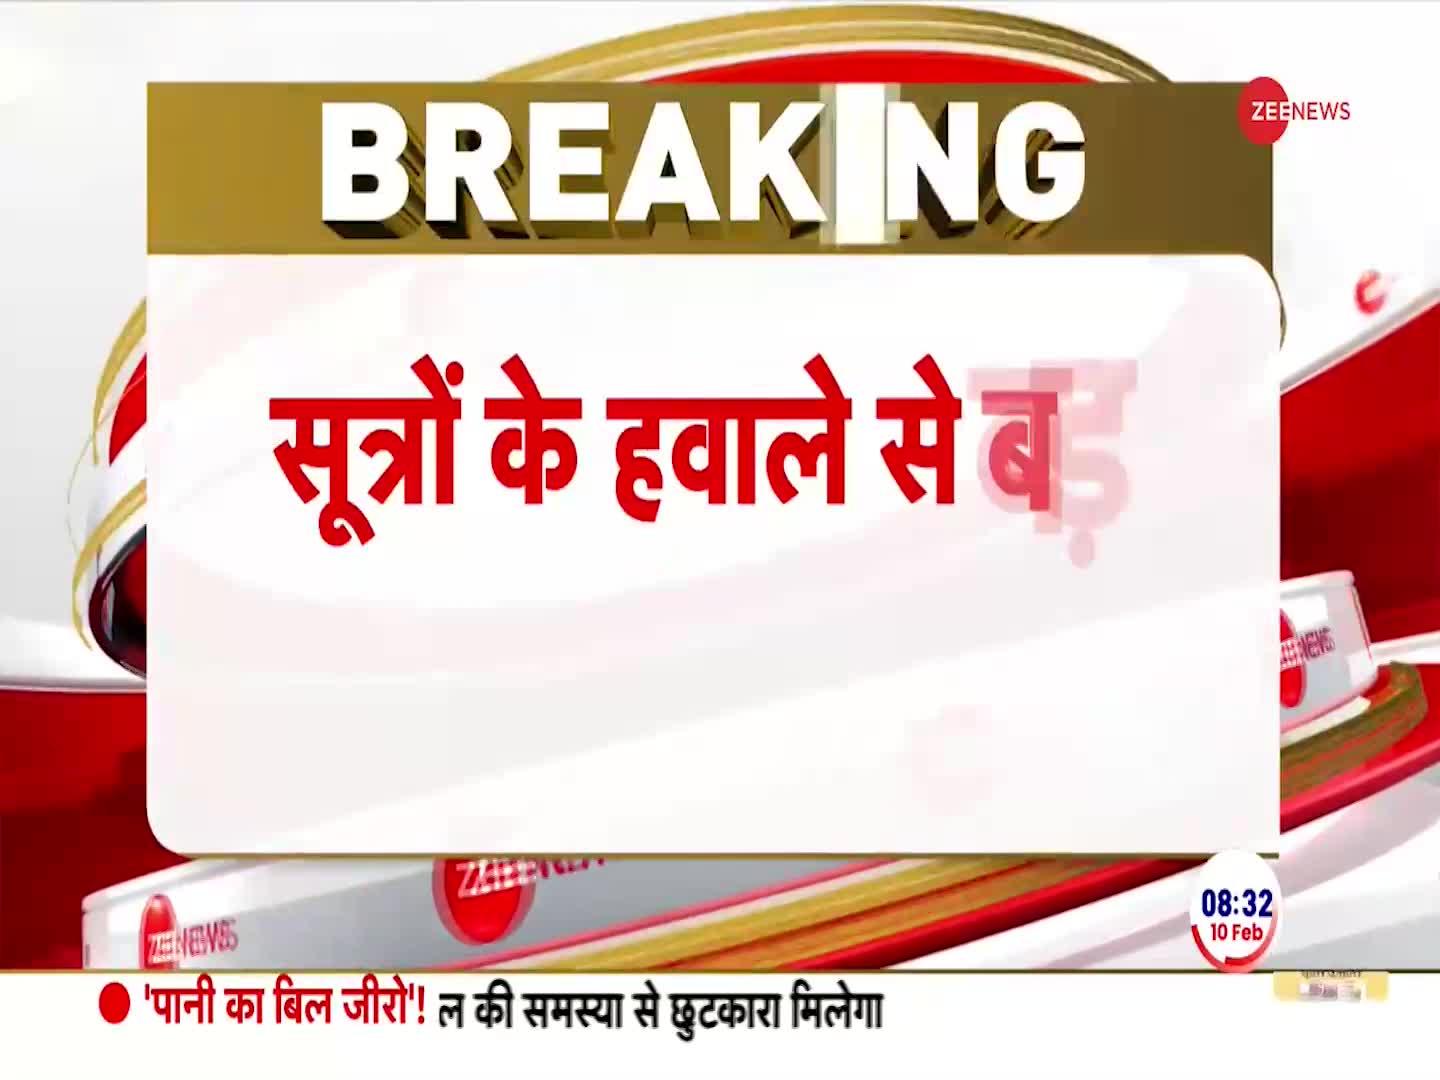 Bihar Breaking News: फ्लोर टेस्ट से पहले RJD को बड़ा झटका, लालू यादव के 12 विधायक गायब